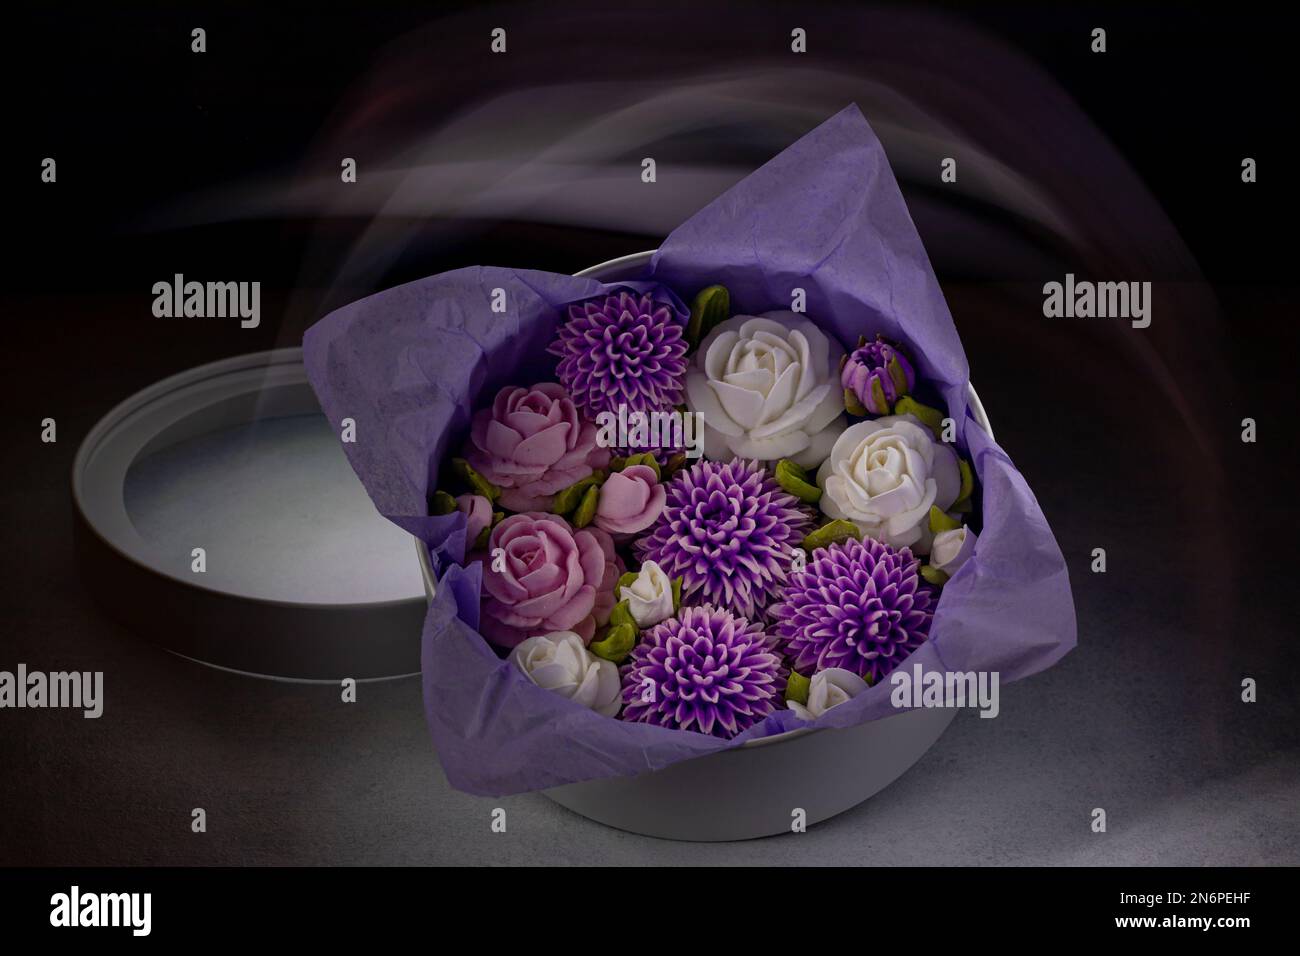 Bouquet de fleurs de guimauve dans une boîte cadeau sur fond sombre, avec un pinceau clair. Banque D'Images